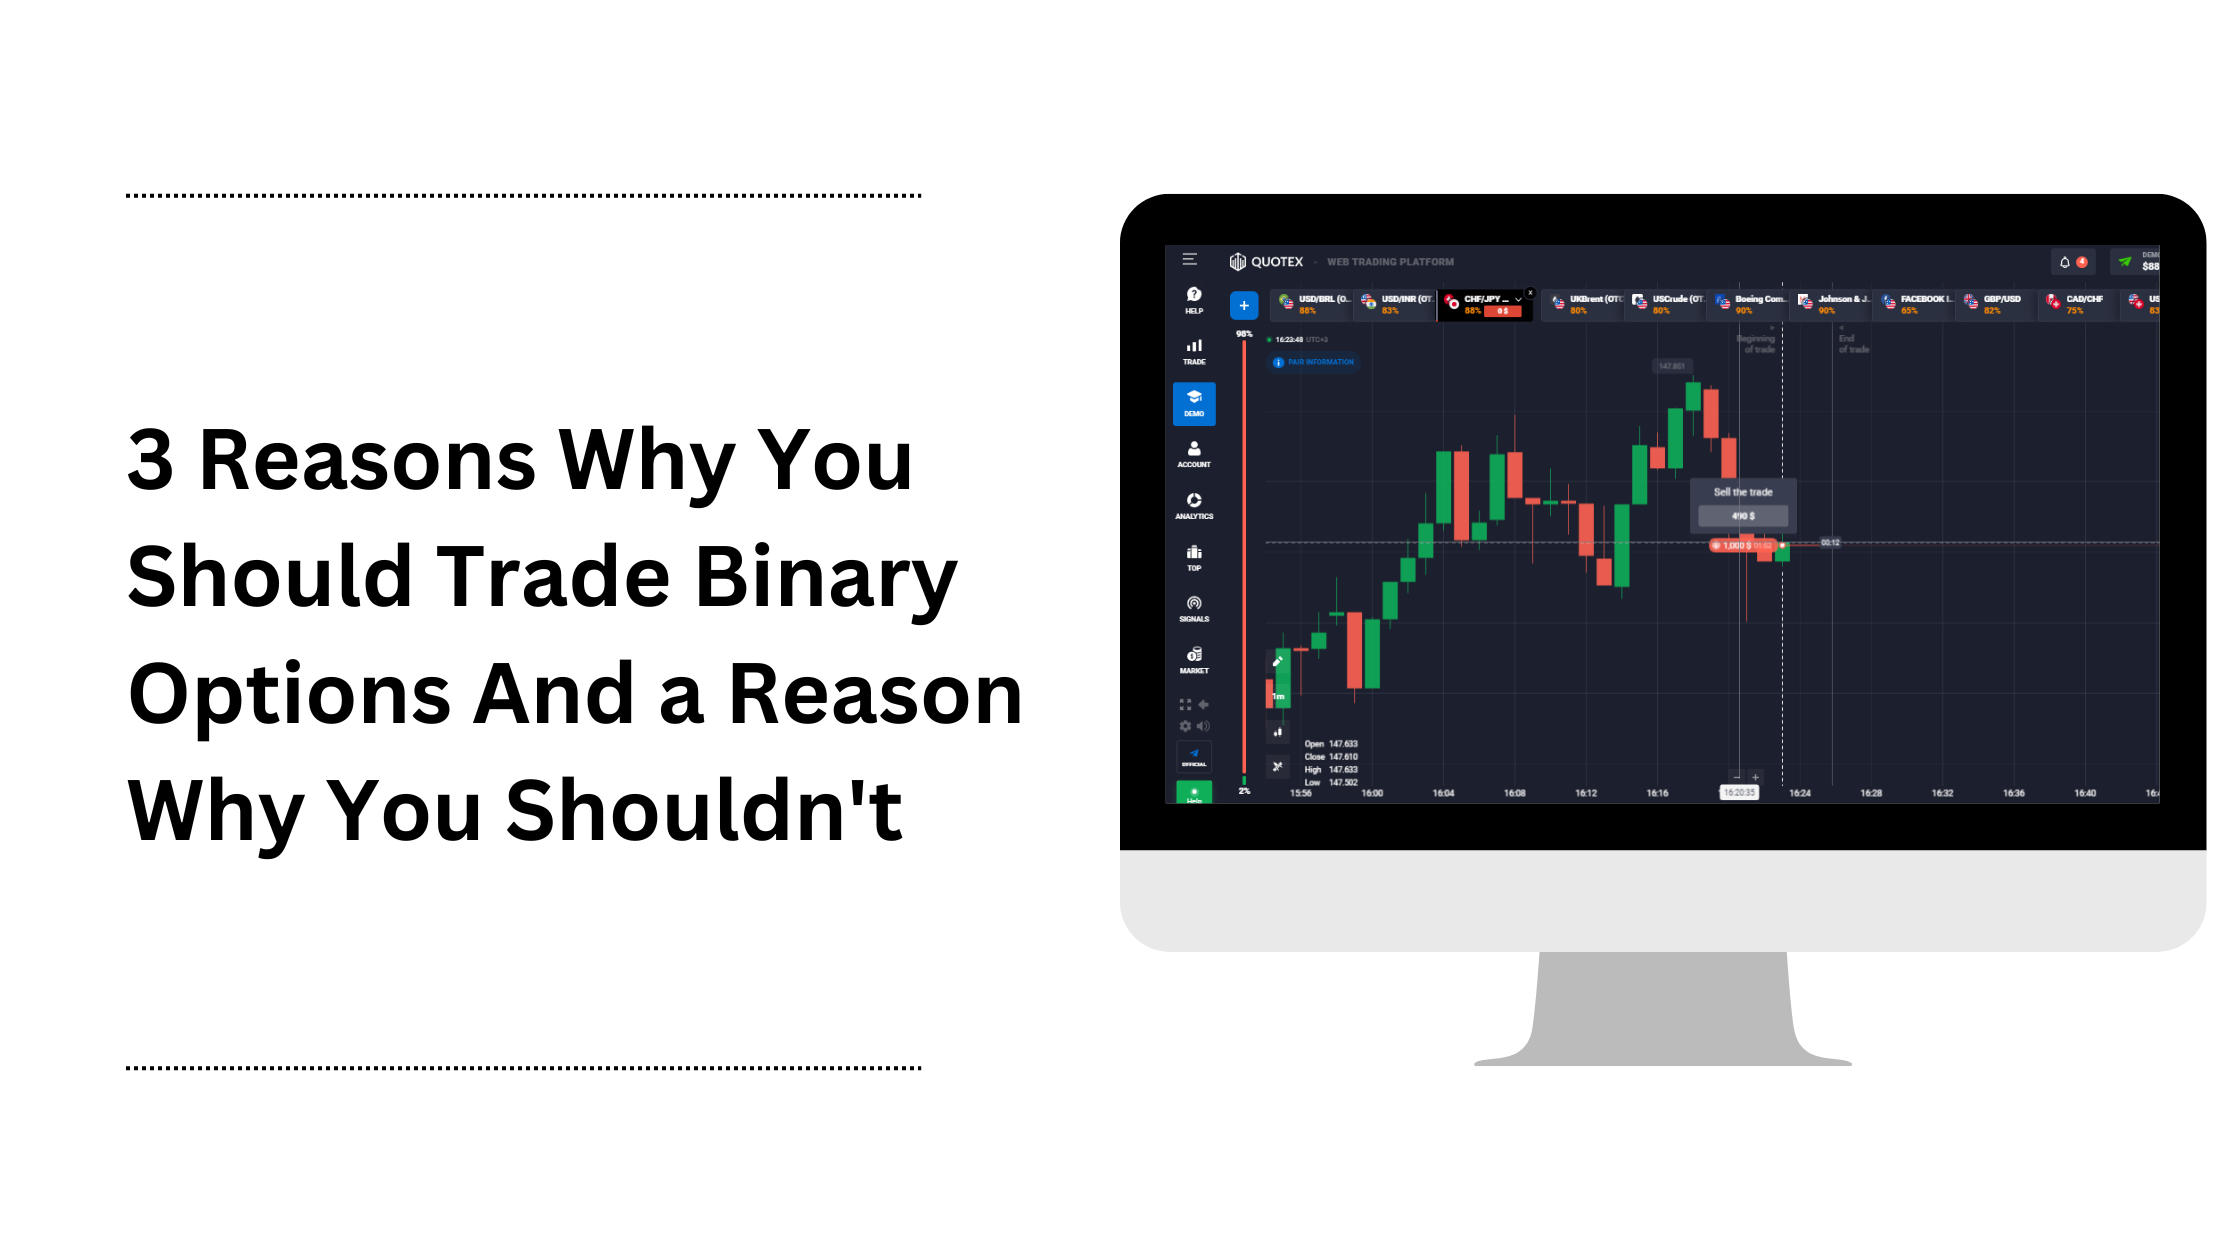 Raisons pour lesquelles vous devriez trade options binaires